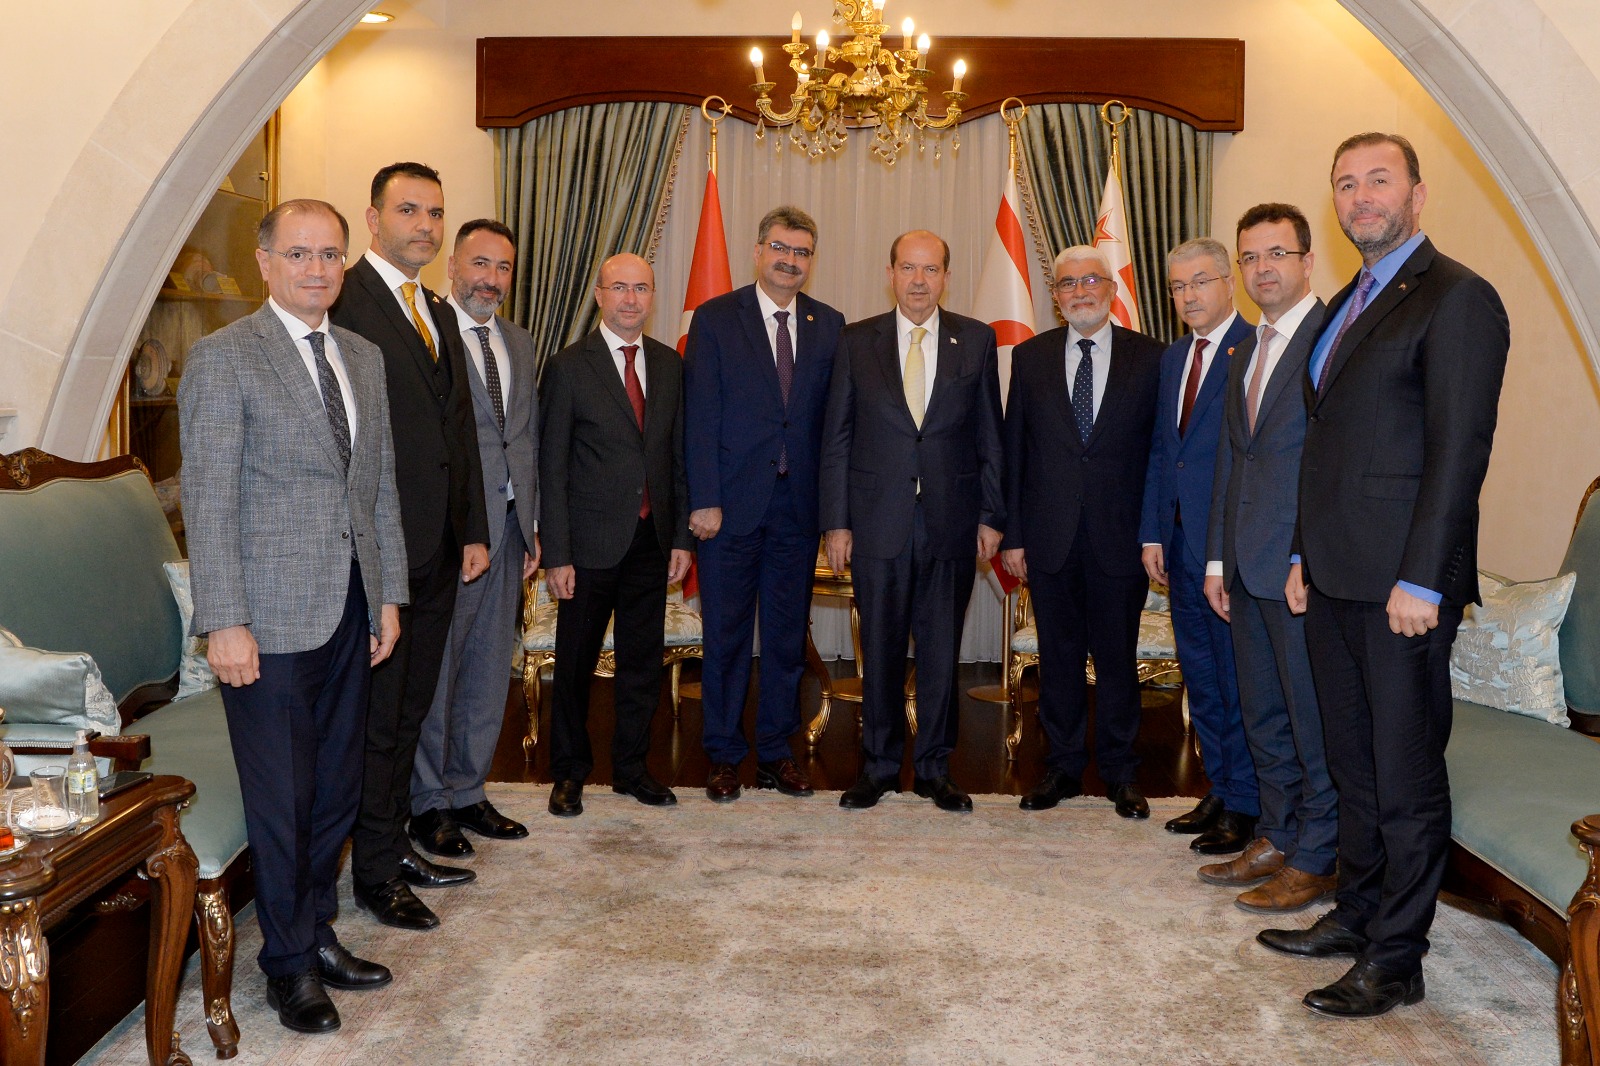 Cumhurbaşkanı Tatar, AK Parti Konya Milletvekili Erdem ve Selçuklu Belediye Başkanı Pekyatırmacı ile beraberindeki heyeti kabul etti